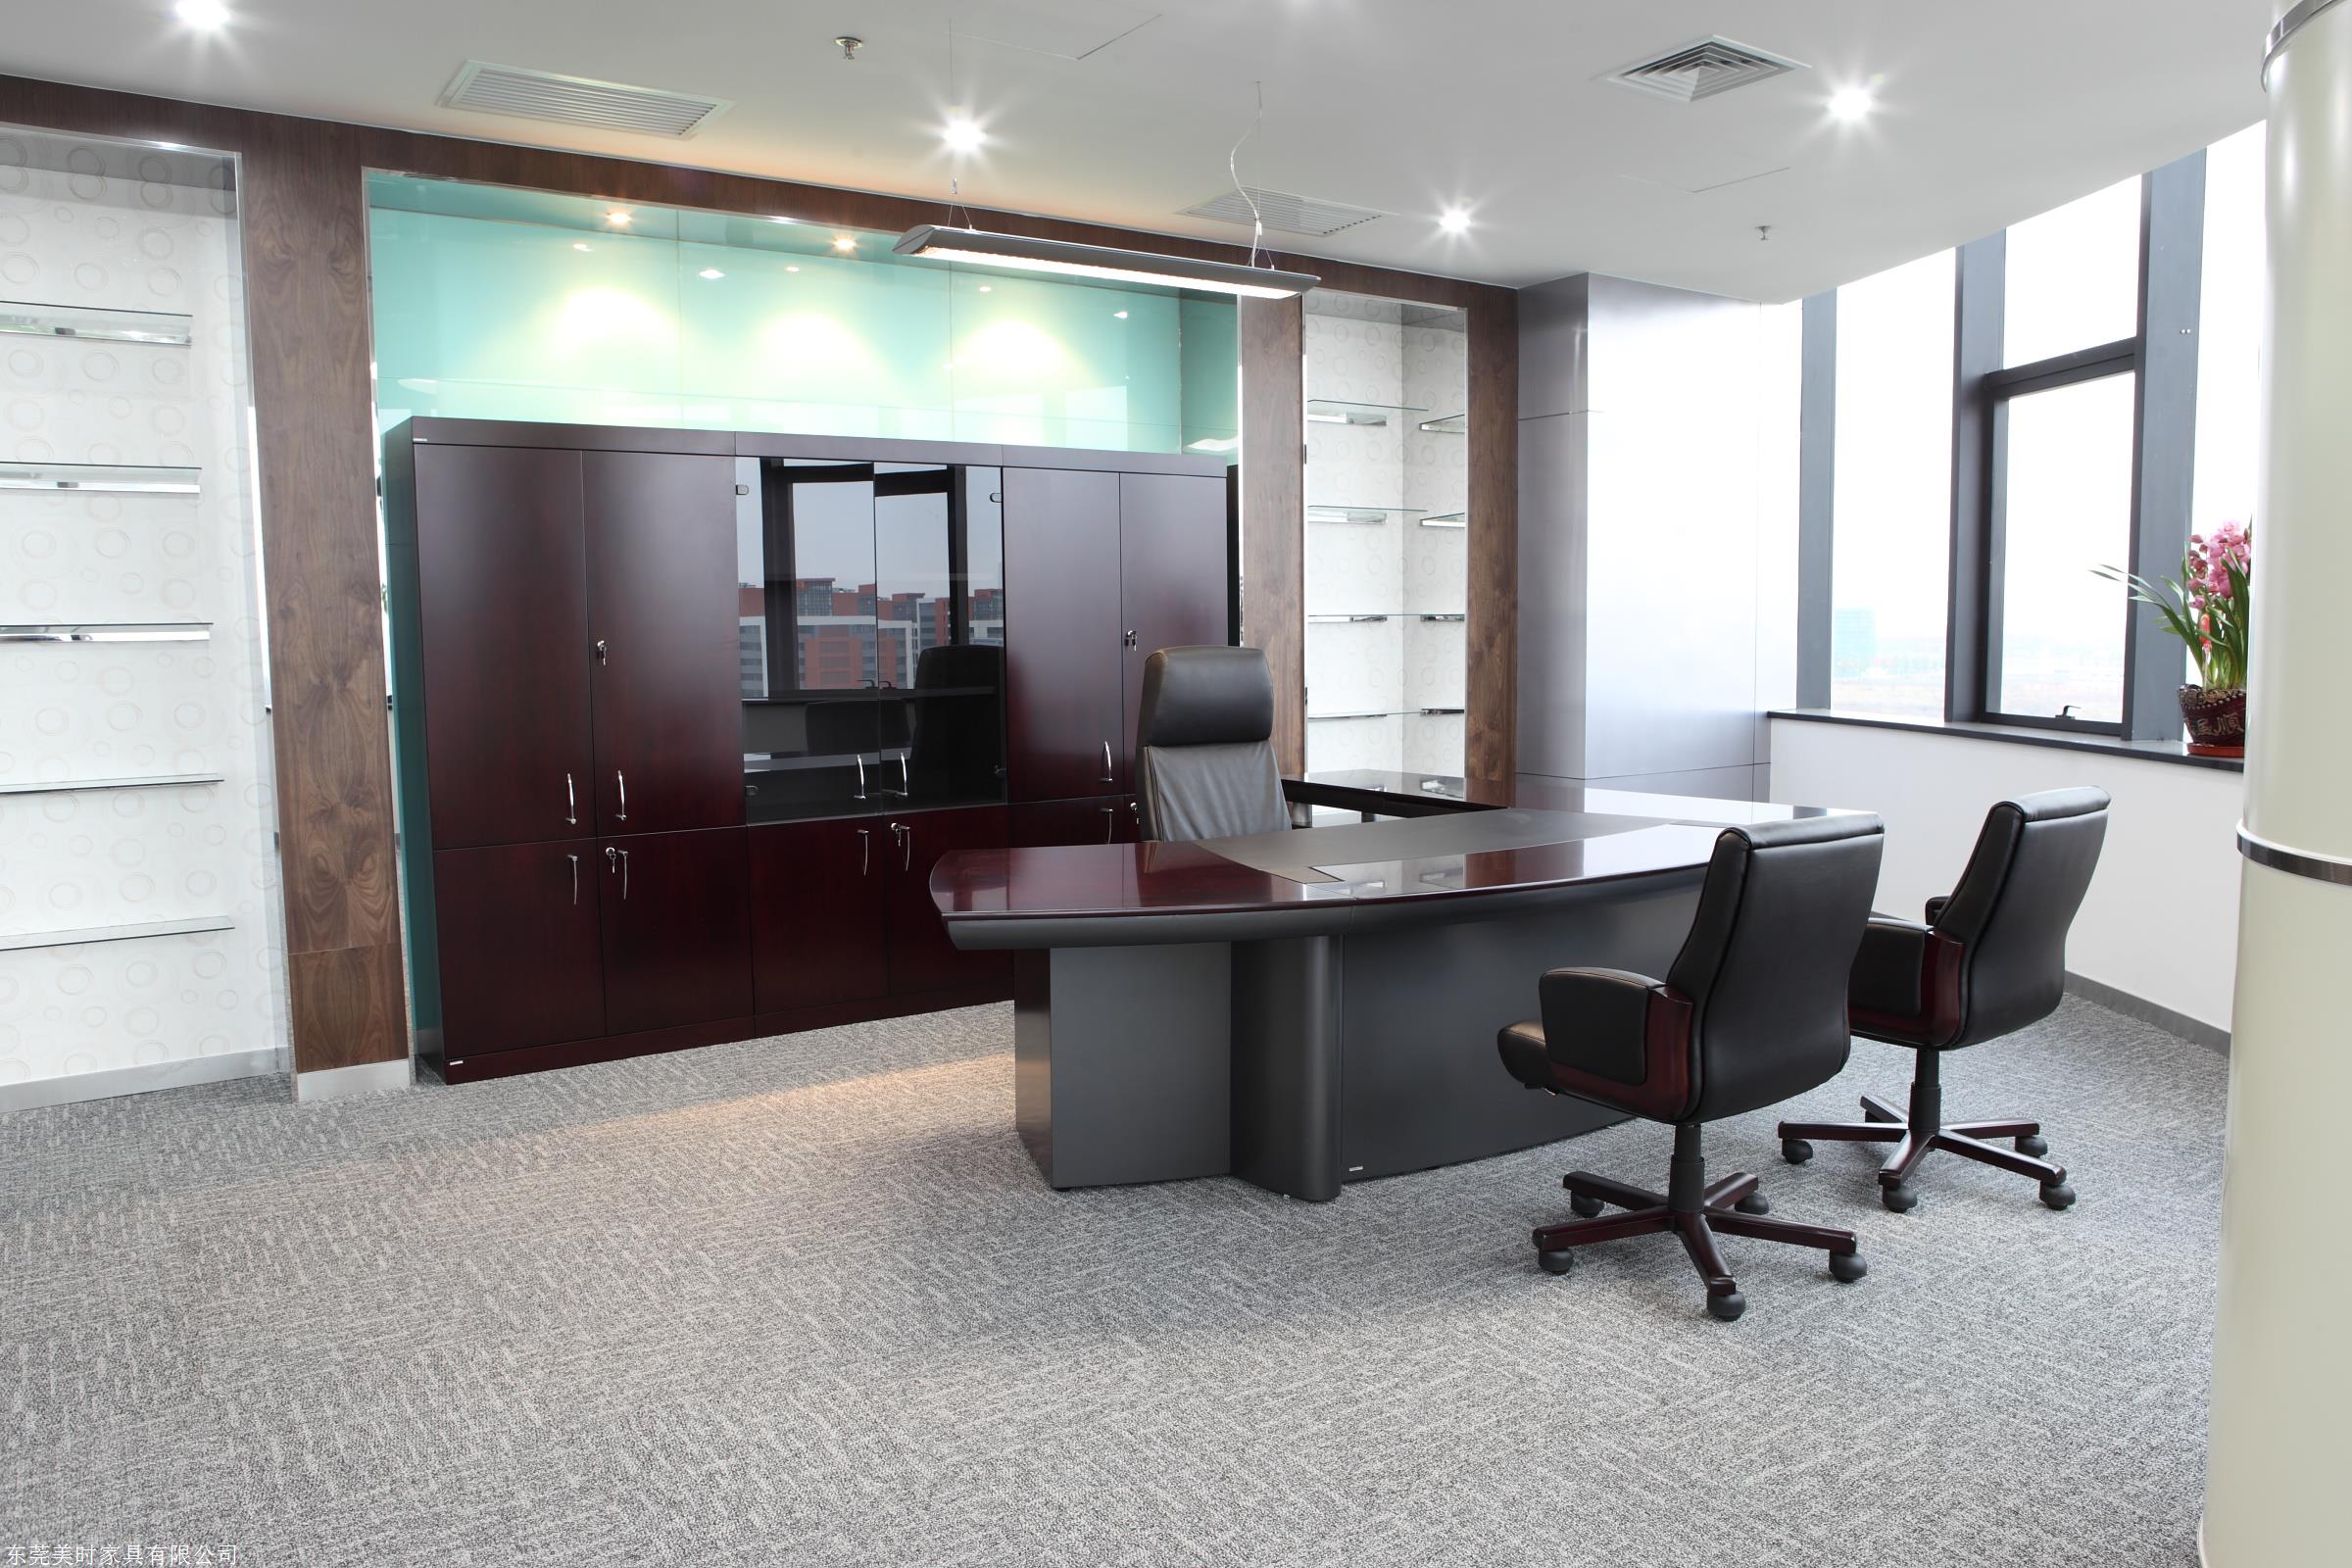 美时办公家具 提供公司管理层系列办公桌 公司高管理想选择